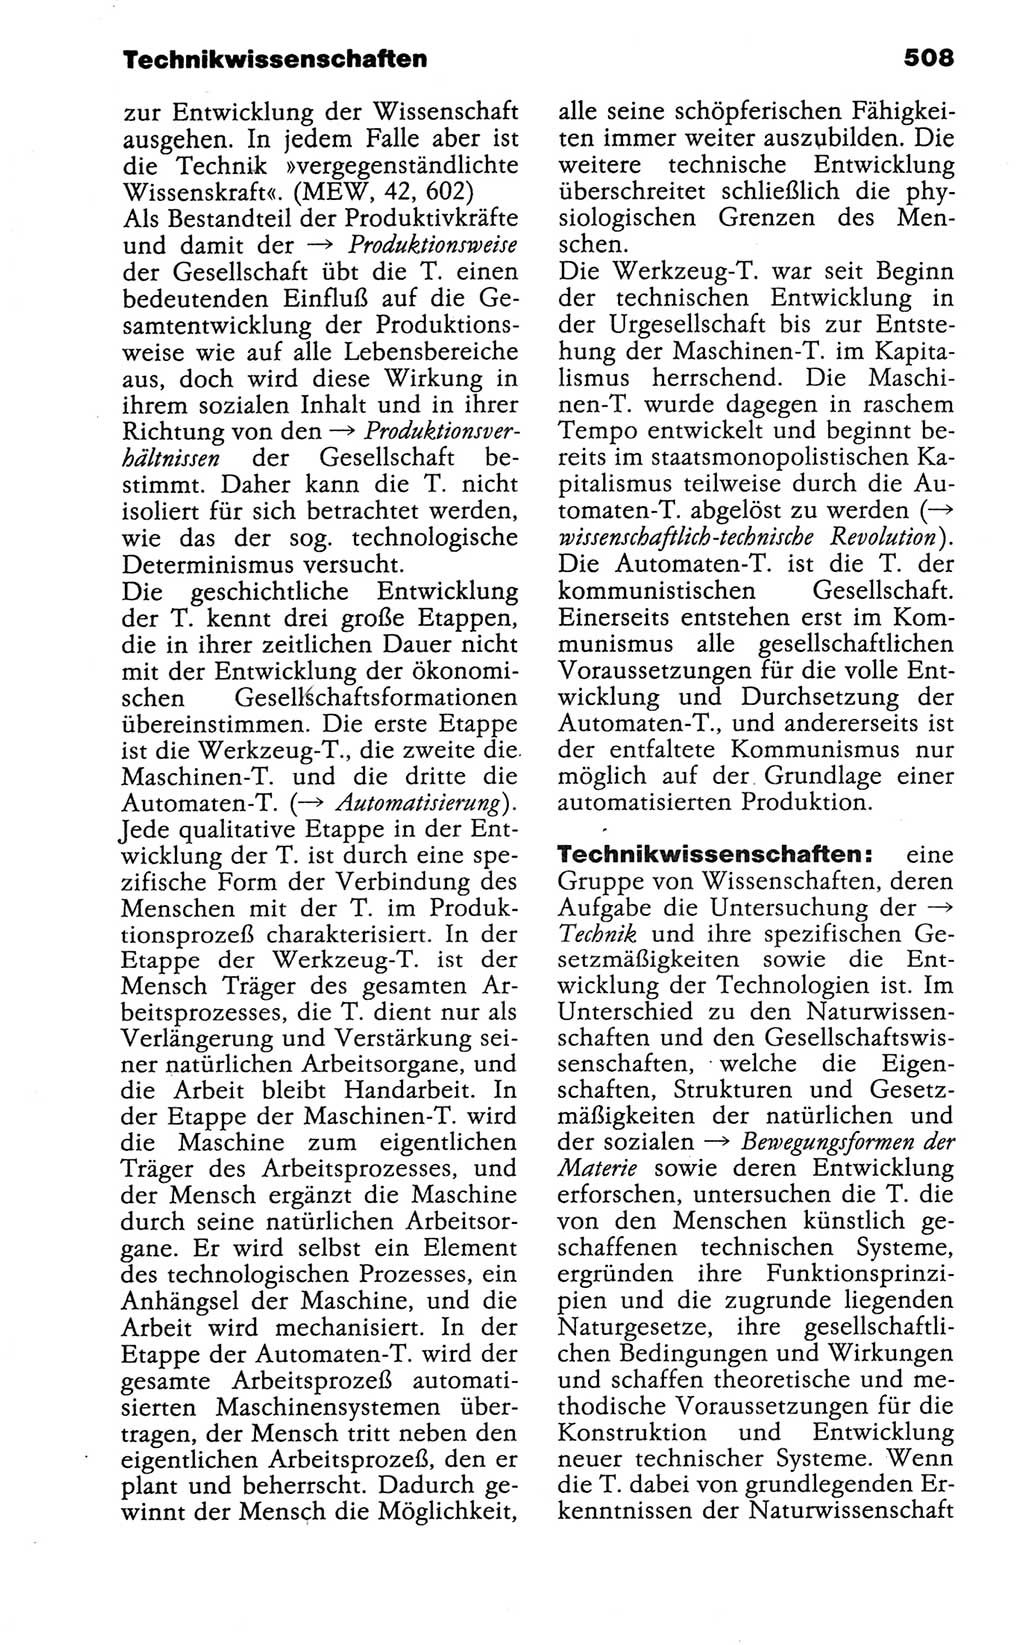 Wörterbuch der marxistisch-leninistischen Philosophie [Deutsche Demokratische Republik (DDR)] 1986, Seite 508 (Wb. ML Phil. DDR 1986, S. 508)